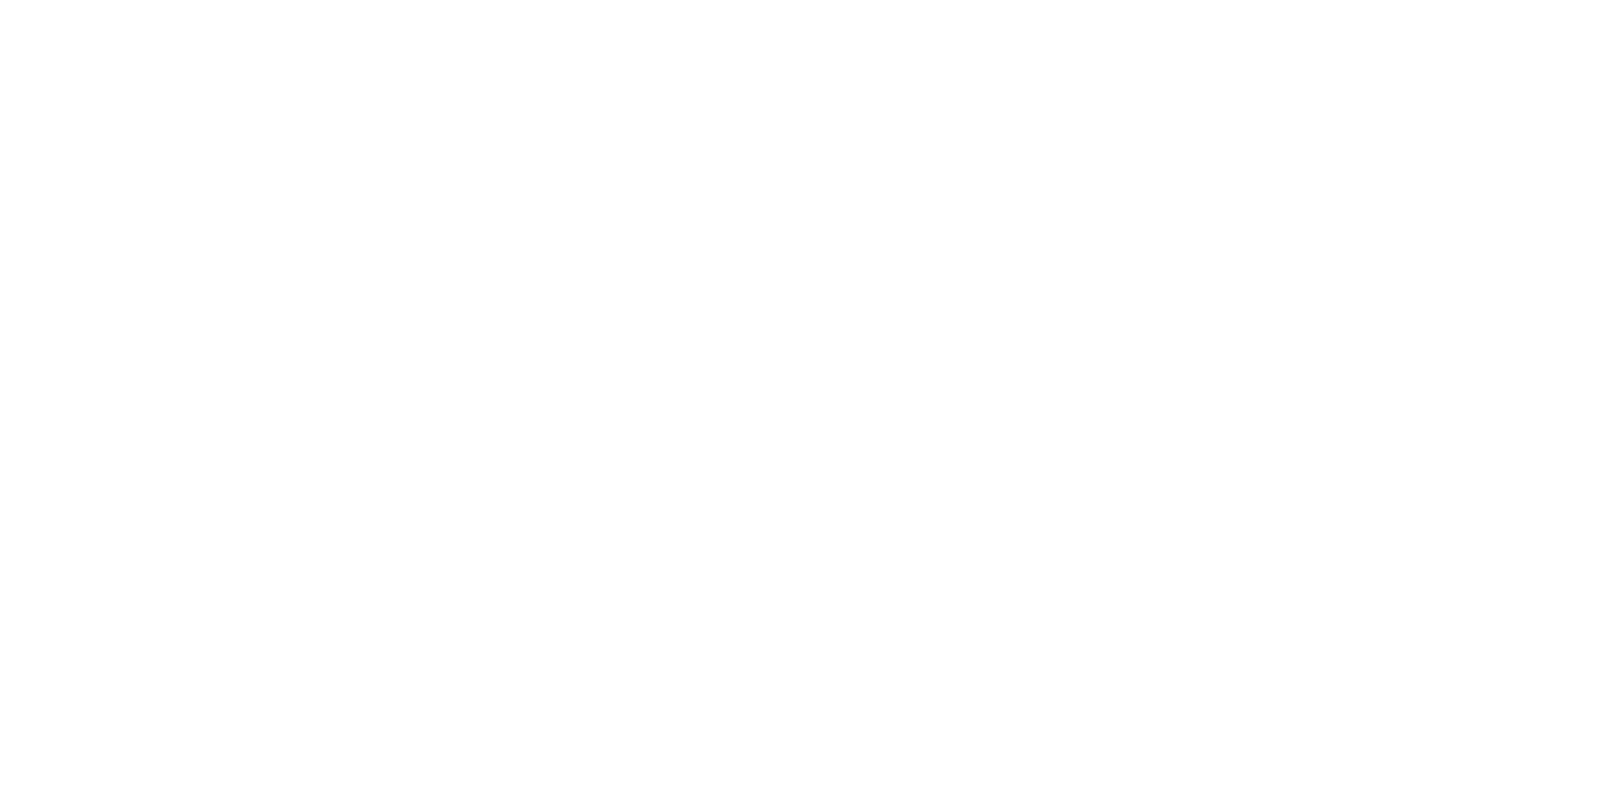 PioneraEdu_Secondary-White